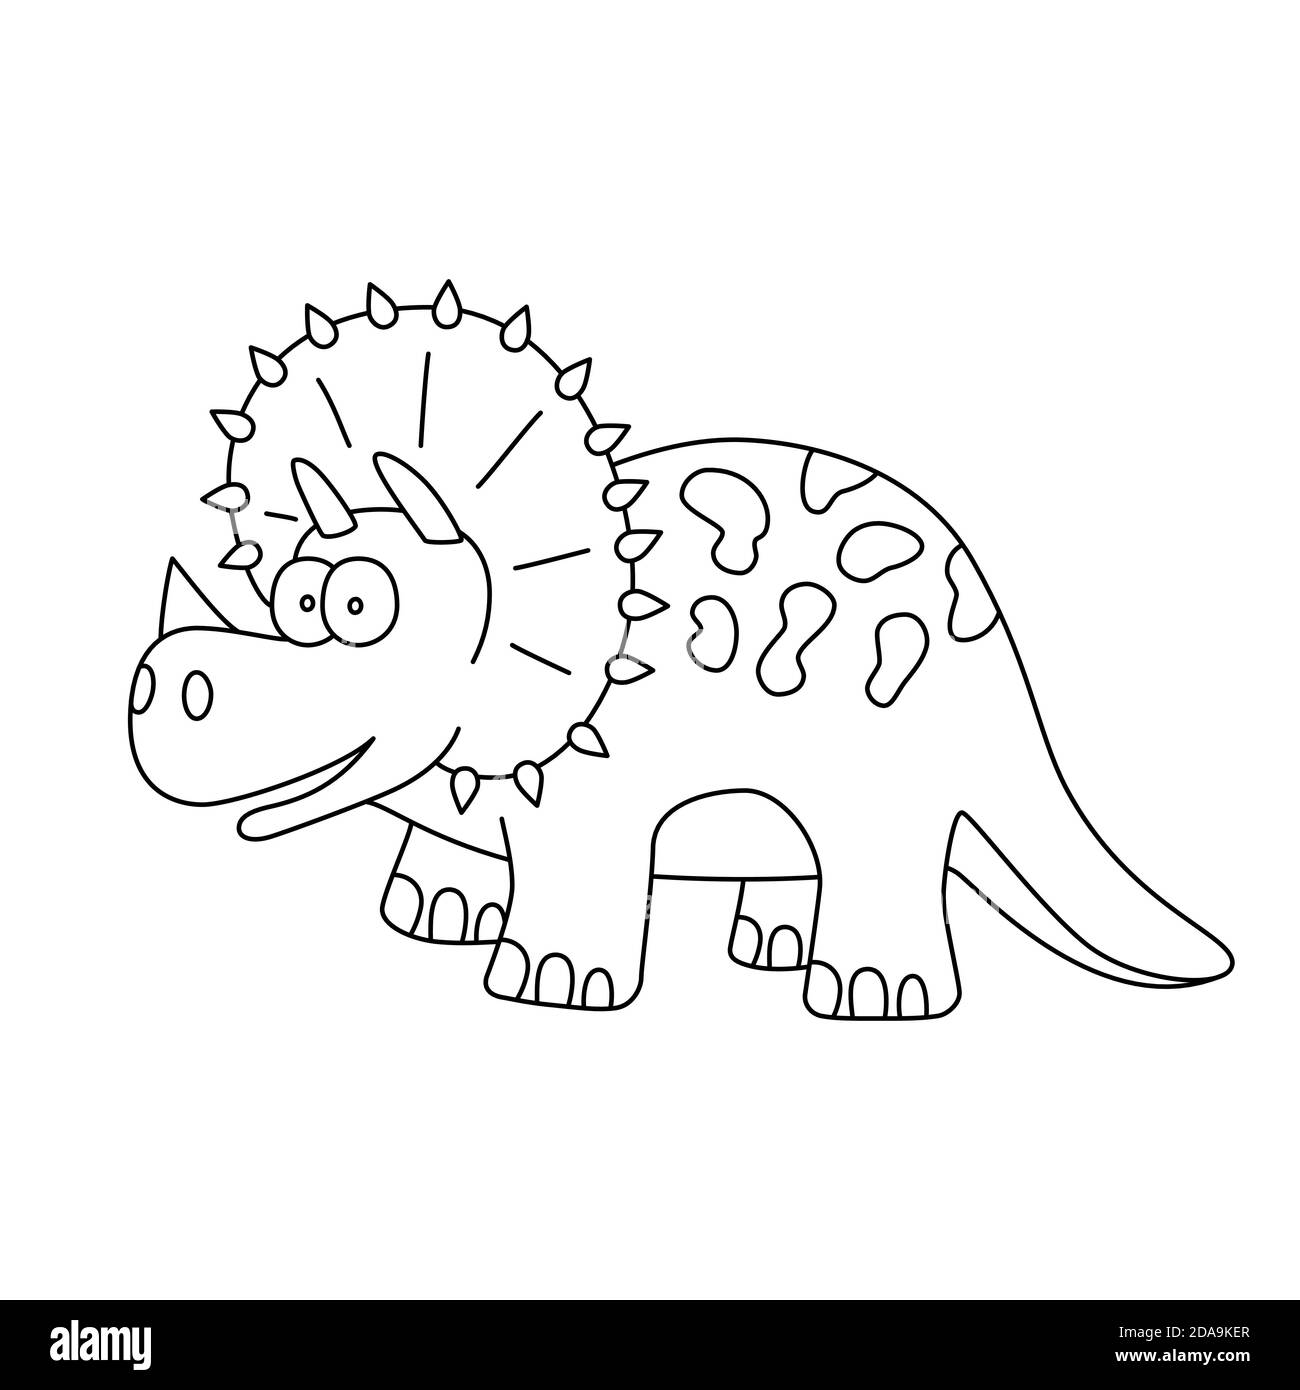 Cute dinosaur. Dino triceratops. Hand drawn vector illustration Stock Vector